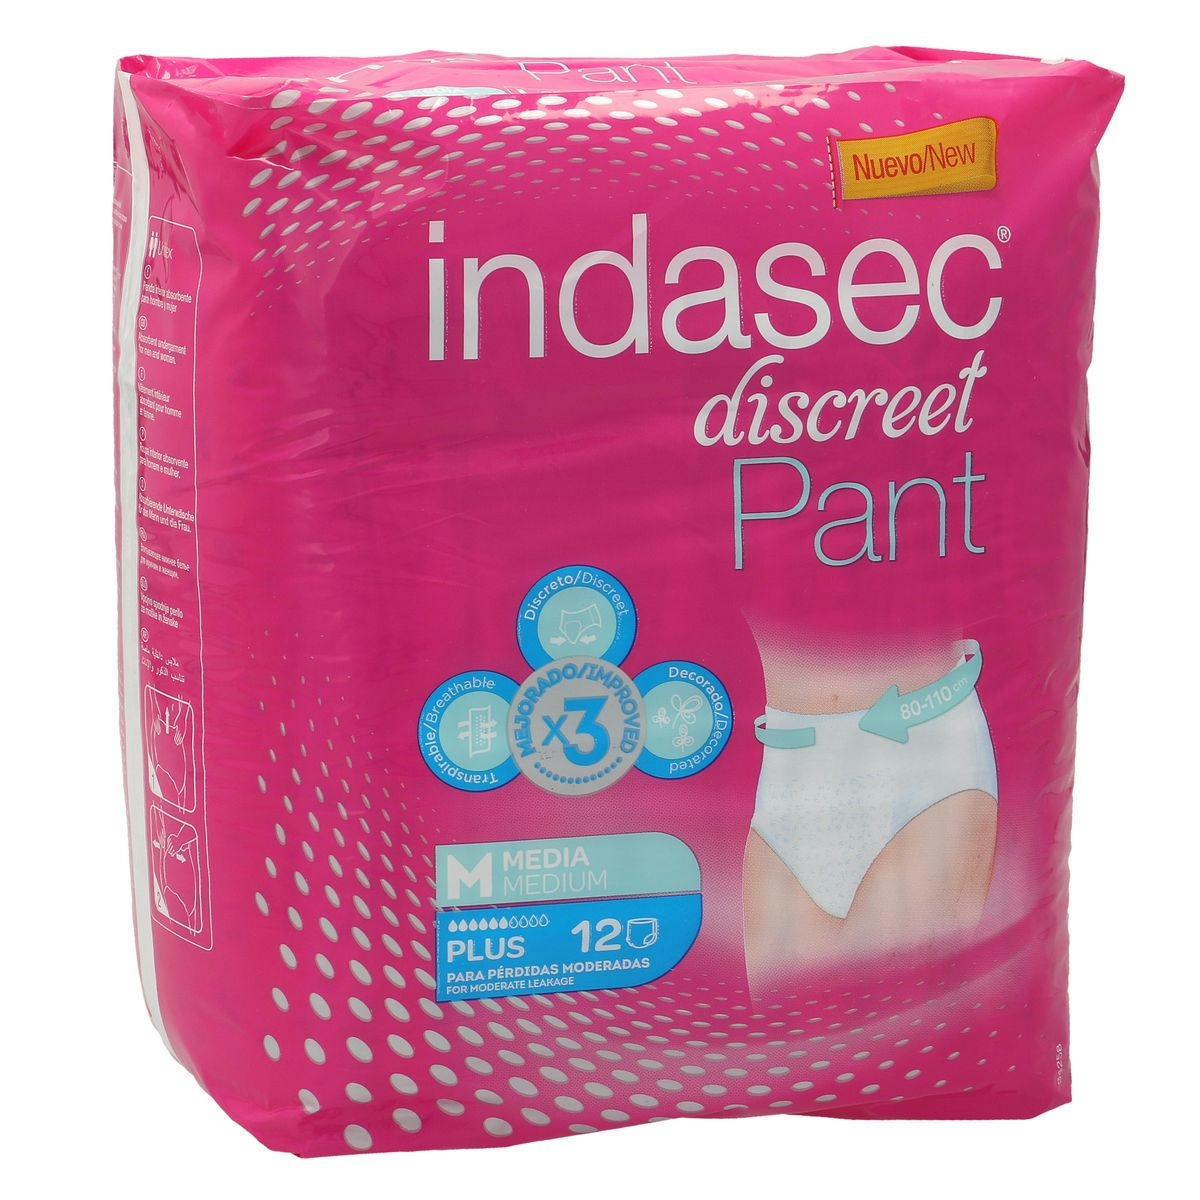 Pants de incontinencia INDASEC plus talla M paquete 12 uds